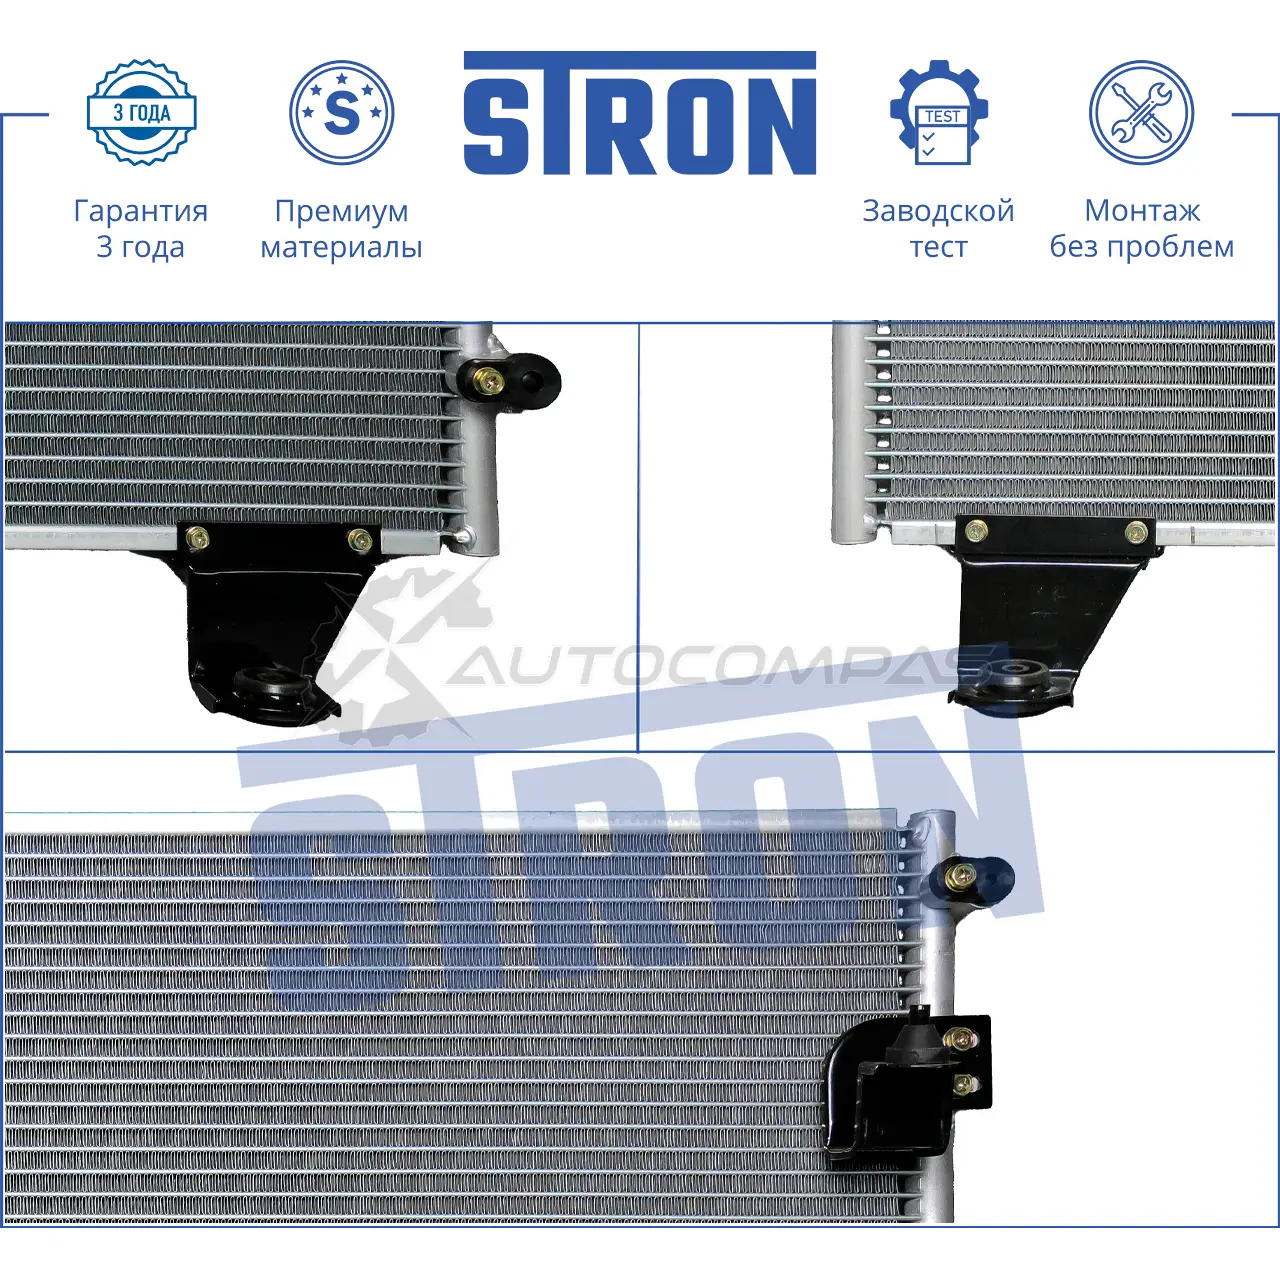 Радиатор кондиционера TOYOTA (HILUX VII) STRON SJN6 X 1441224439 STC0017 изображение 1